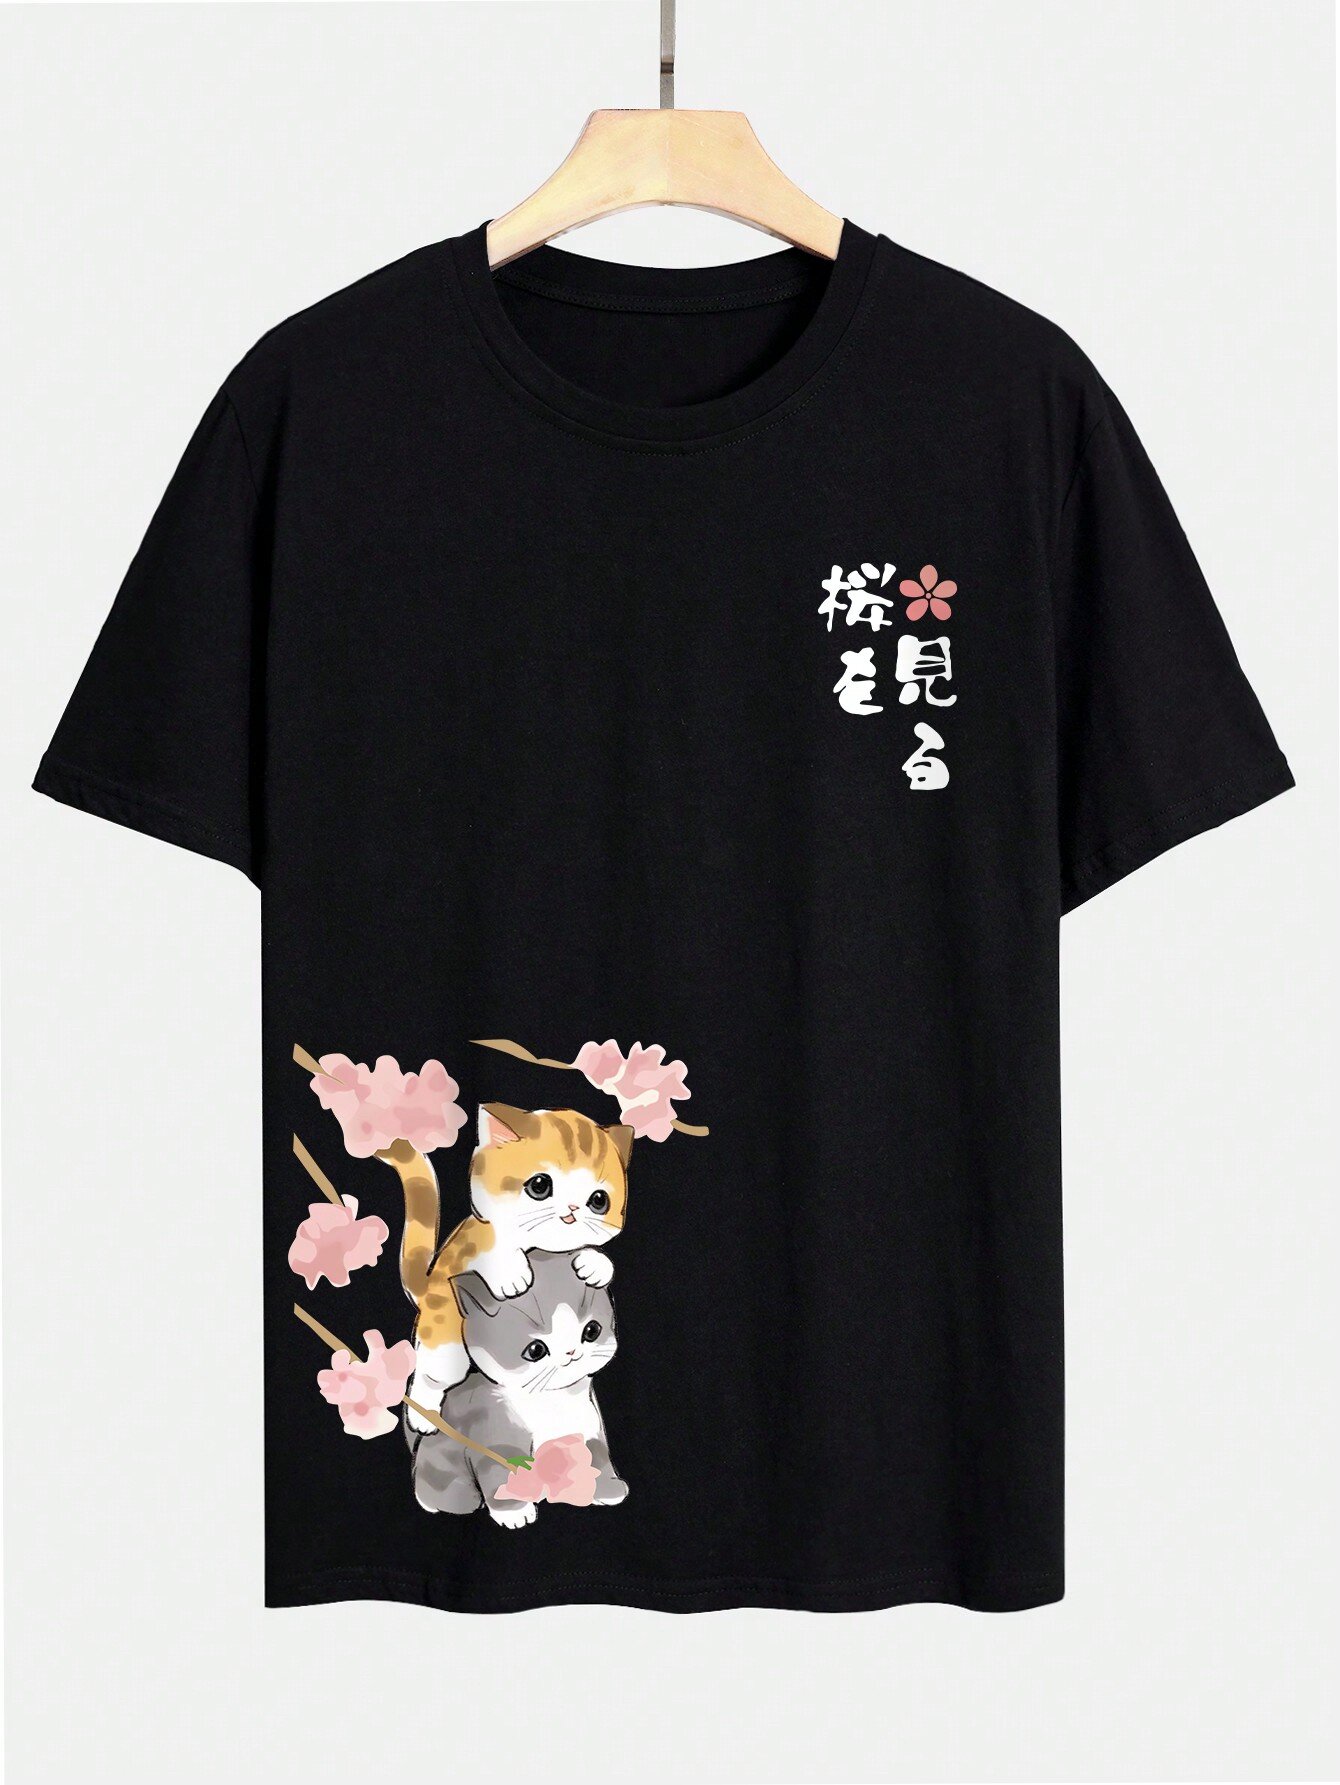 Camisetas de manga corta con estampado de flores de cerezo japonesas para hombre Gato Crew Cuello Invierno